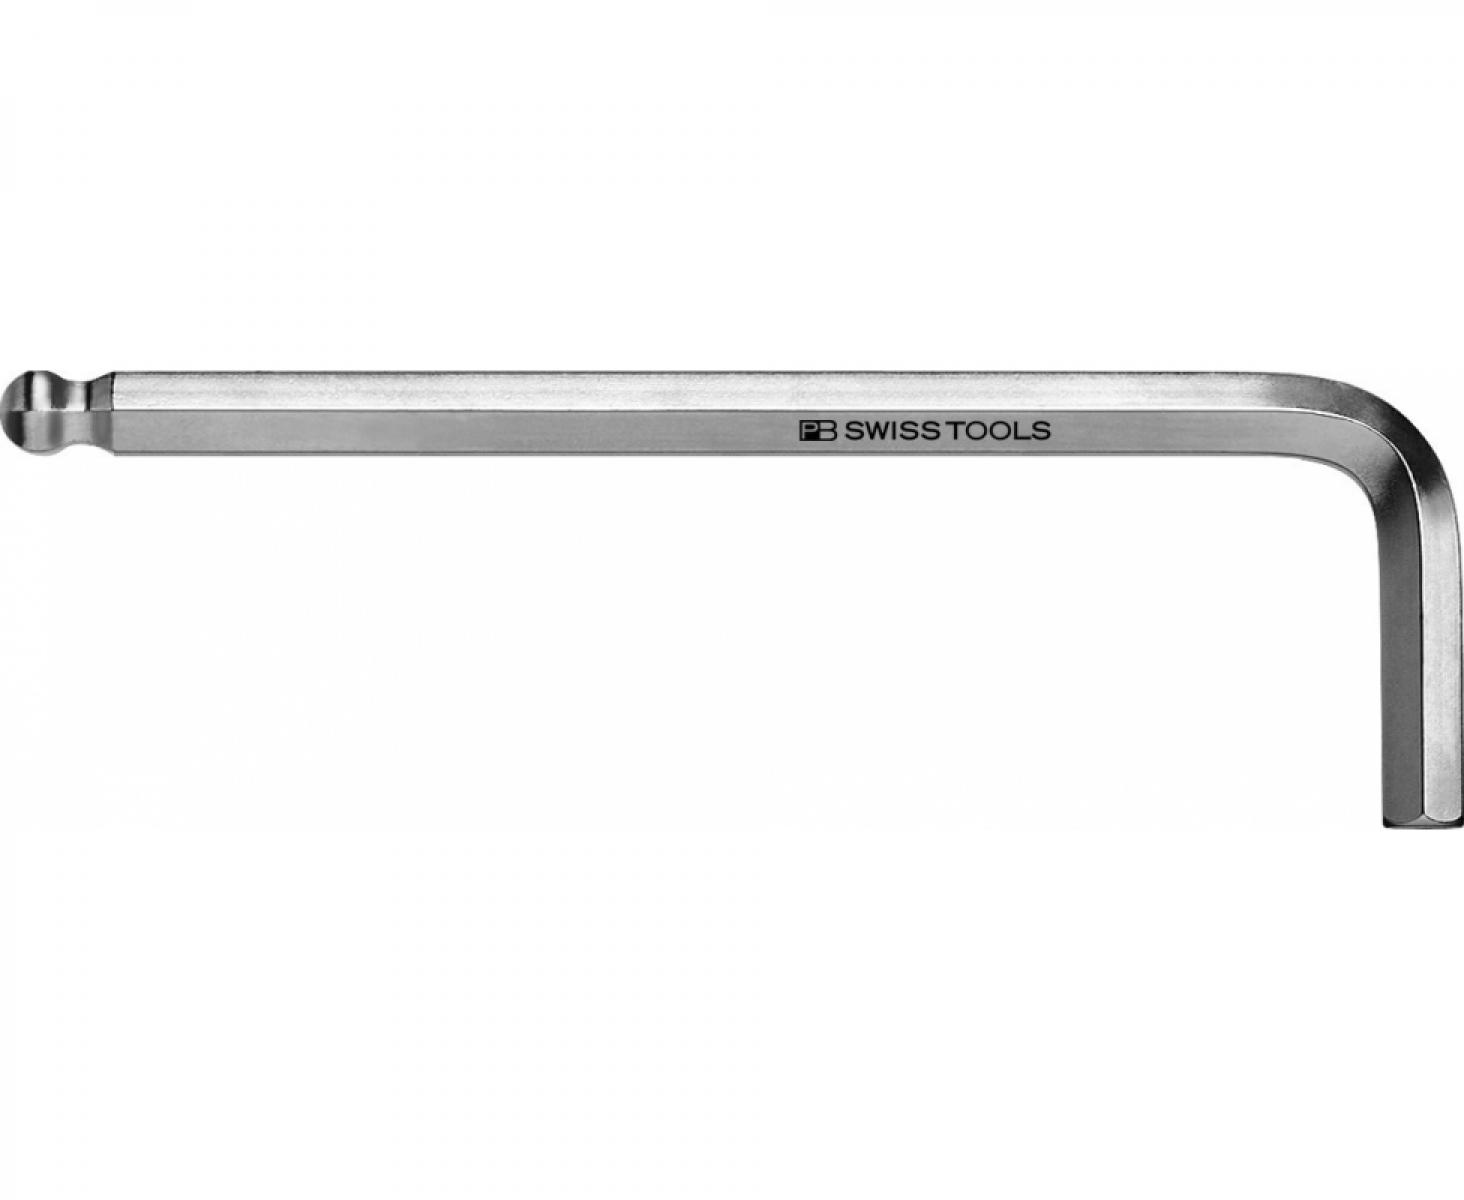 Ключ штифтовый HEX PB Swiss Tools PB 212Z.3/32 со сферической головкой дюймовый